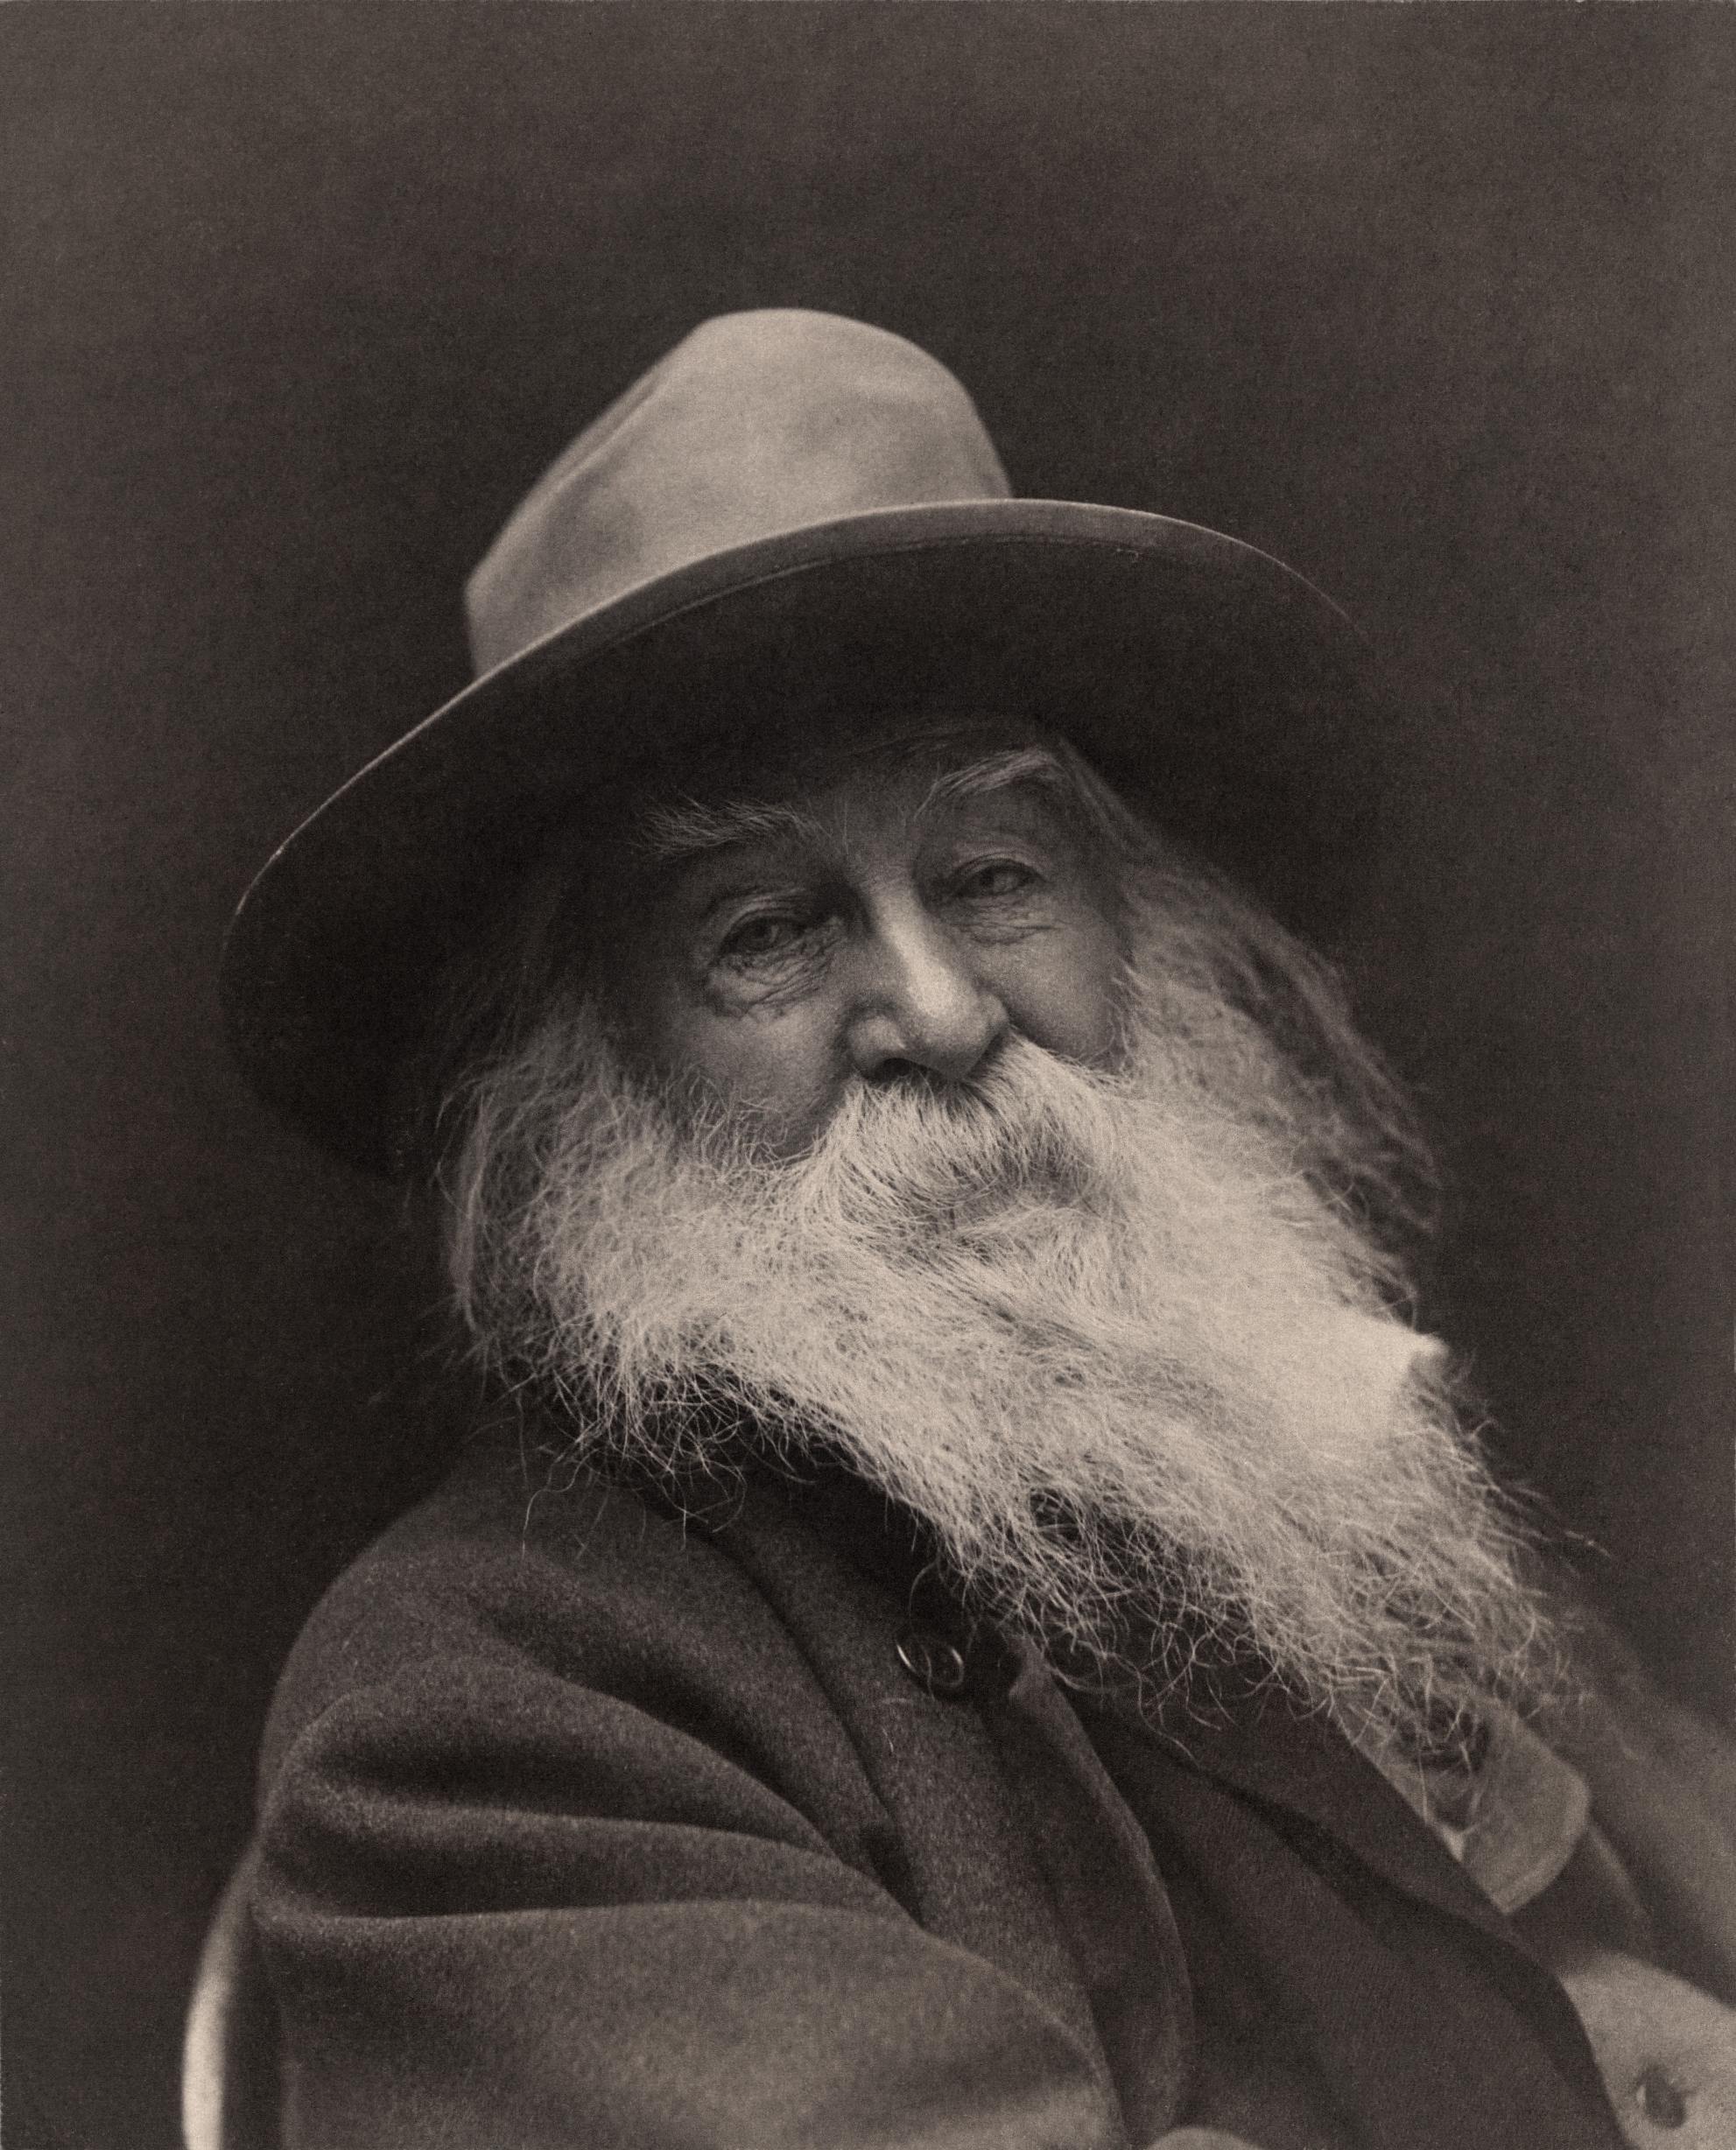 auteur Walt Whitman de la citation Les appels impatients et souvent inconsidérés des réformateurs et des révolutionnaires sont indispensables pour contrebalancer l'inertie et le fossilisme marquant si grande partie des institutions humaines.